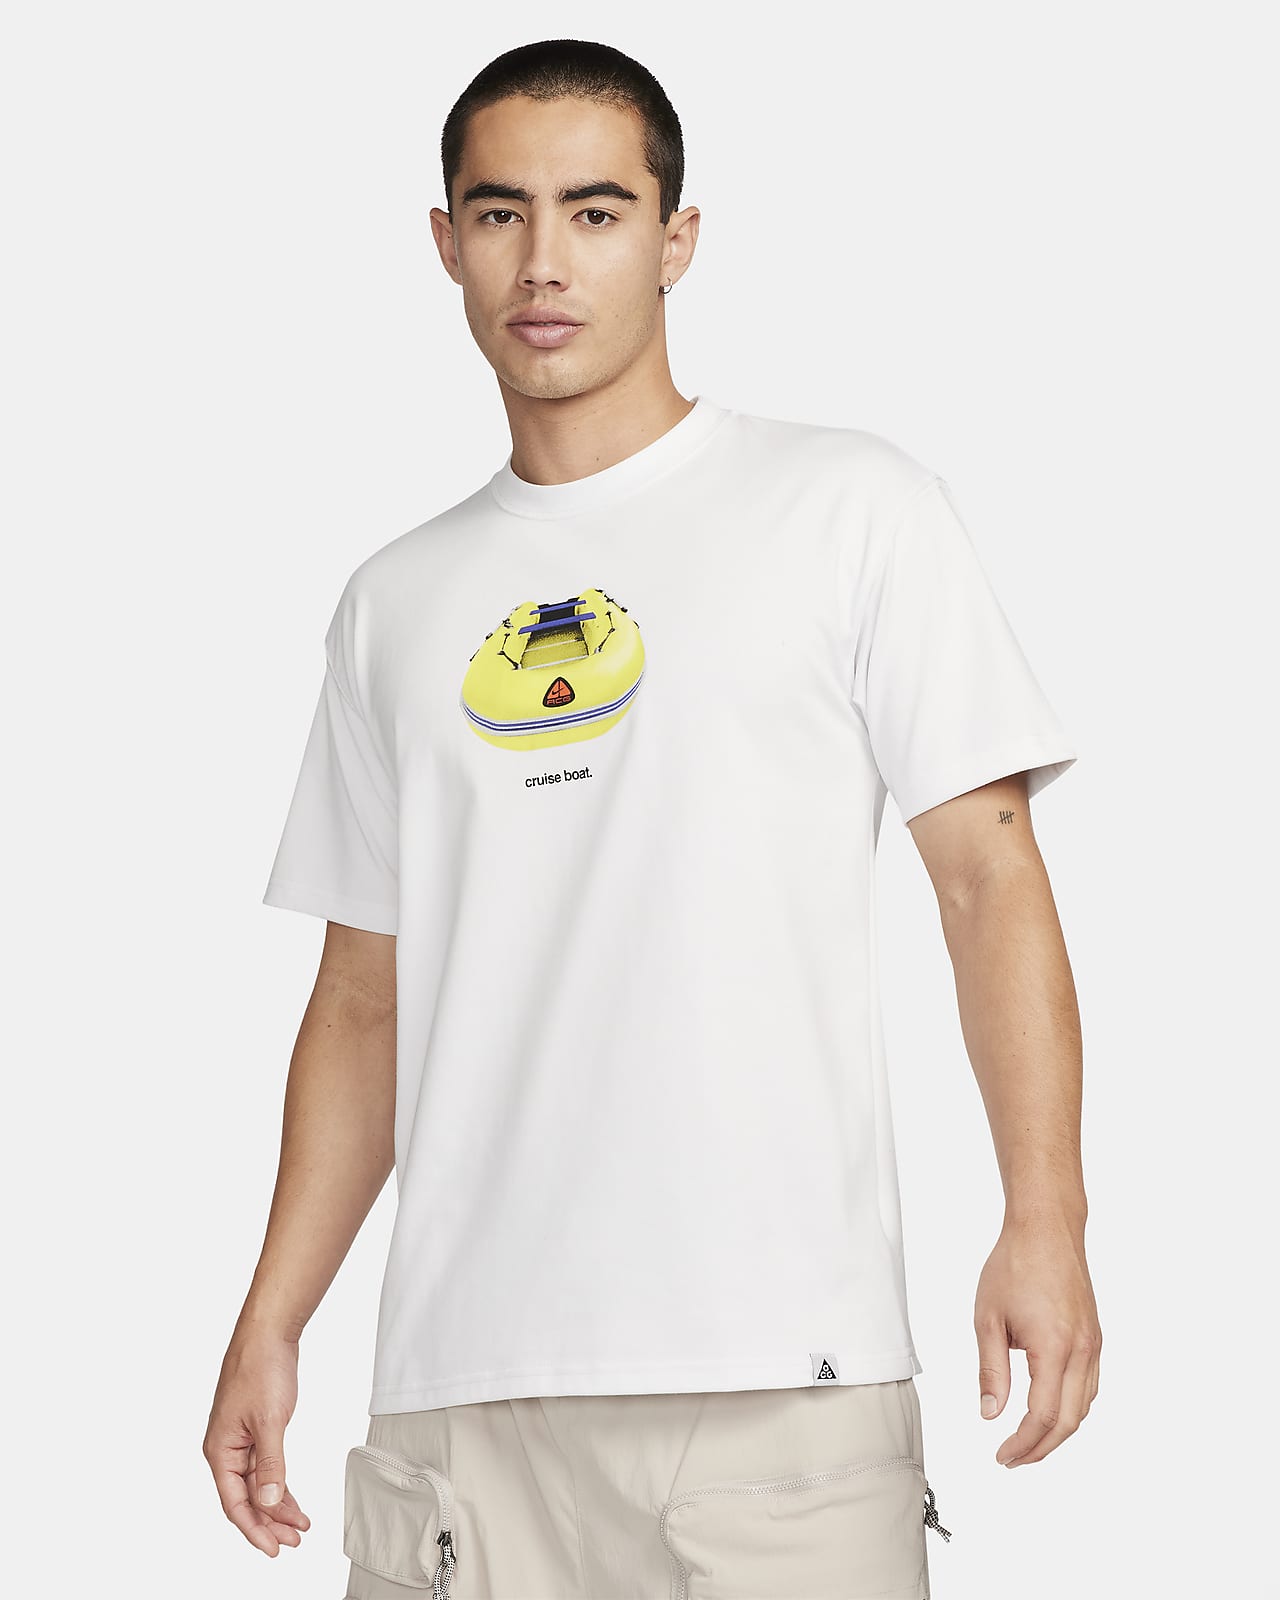 나이키 ACG '크루즈 보트' 남성 드라이 핏 티셔츠